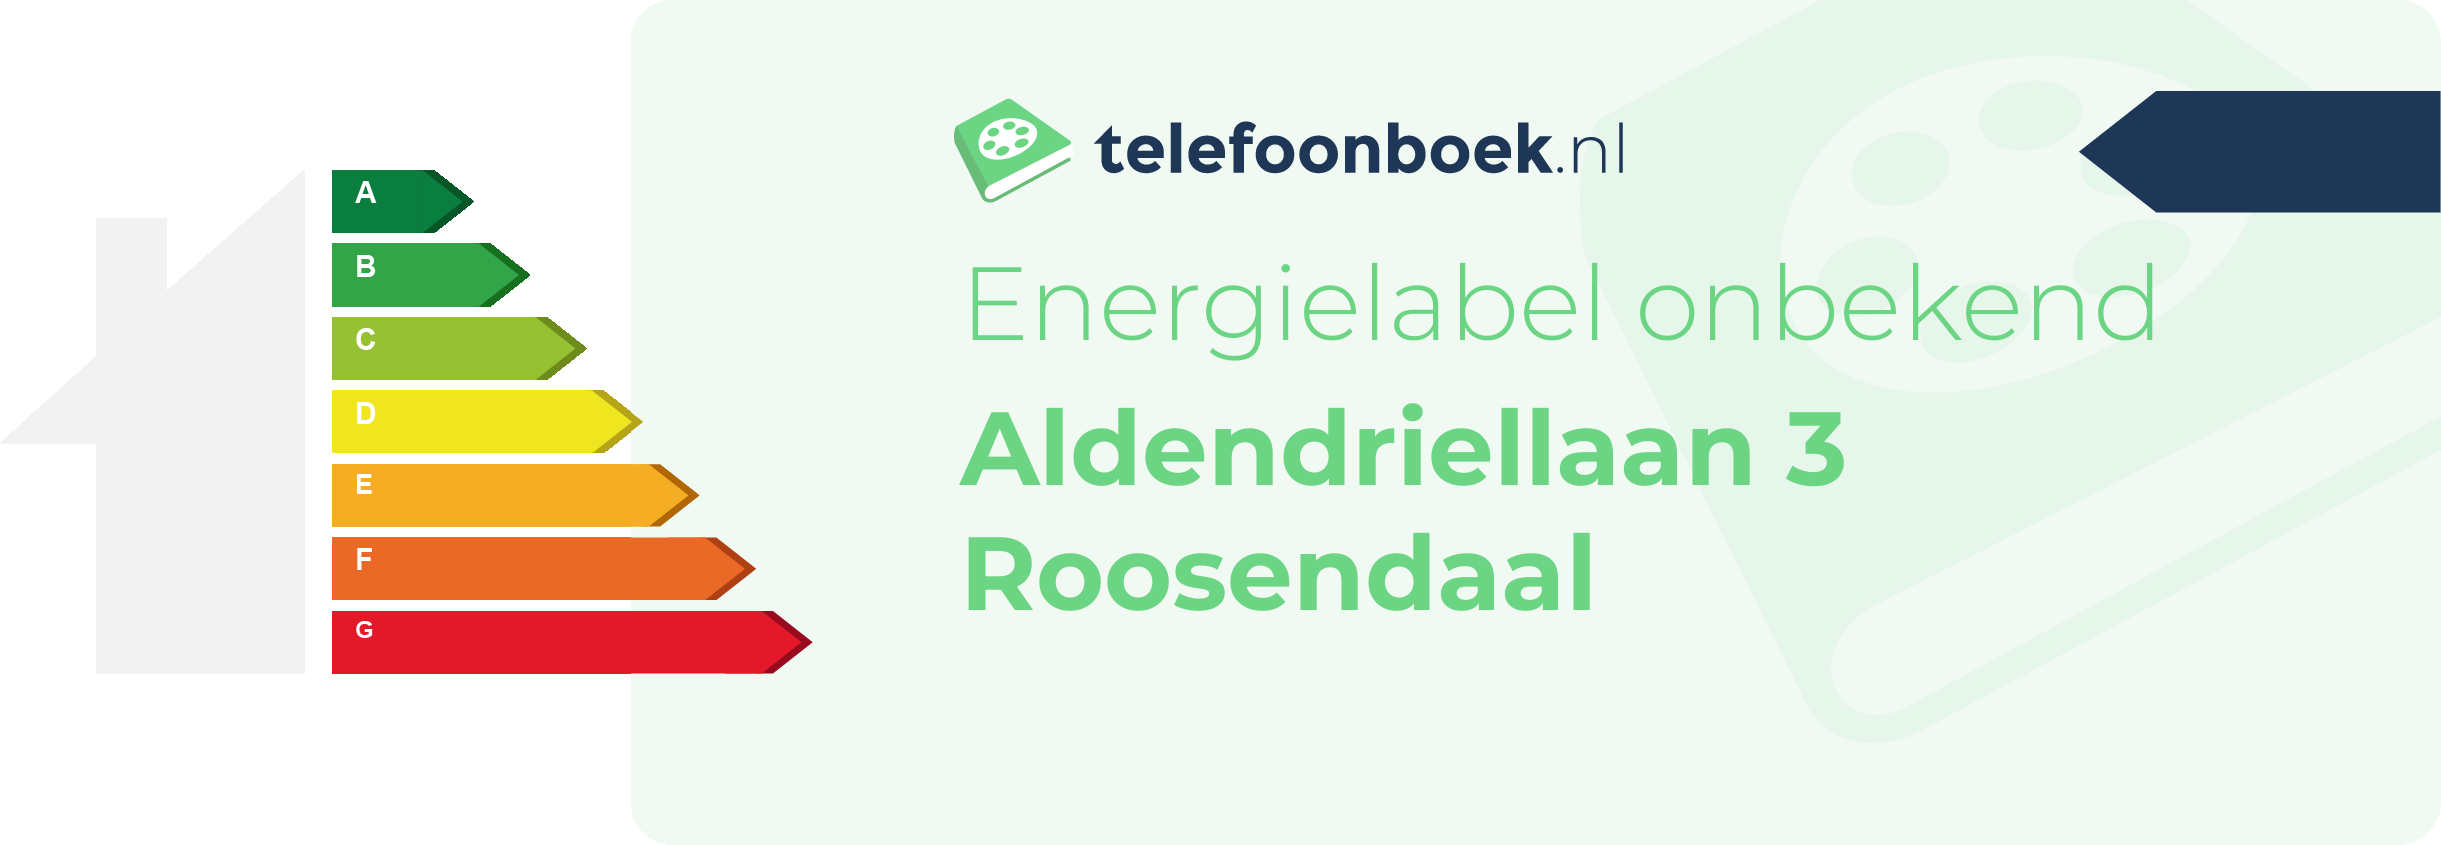 Energielabel Aldendriellaan 3 Roosendaal